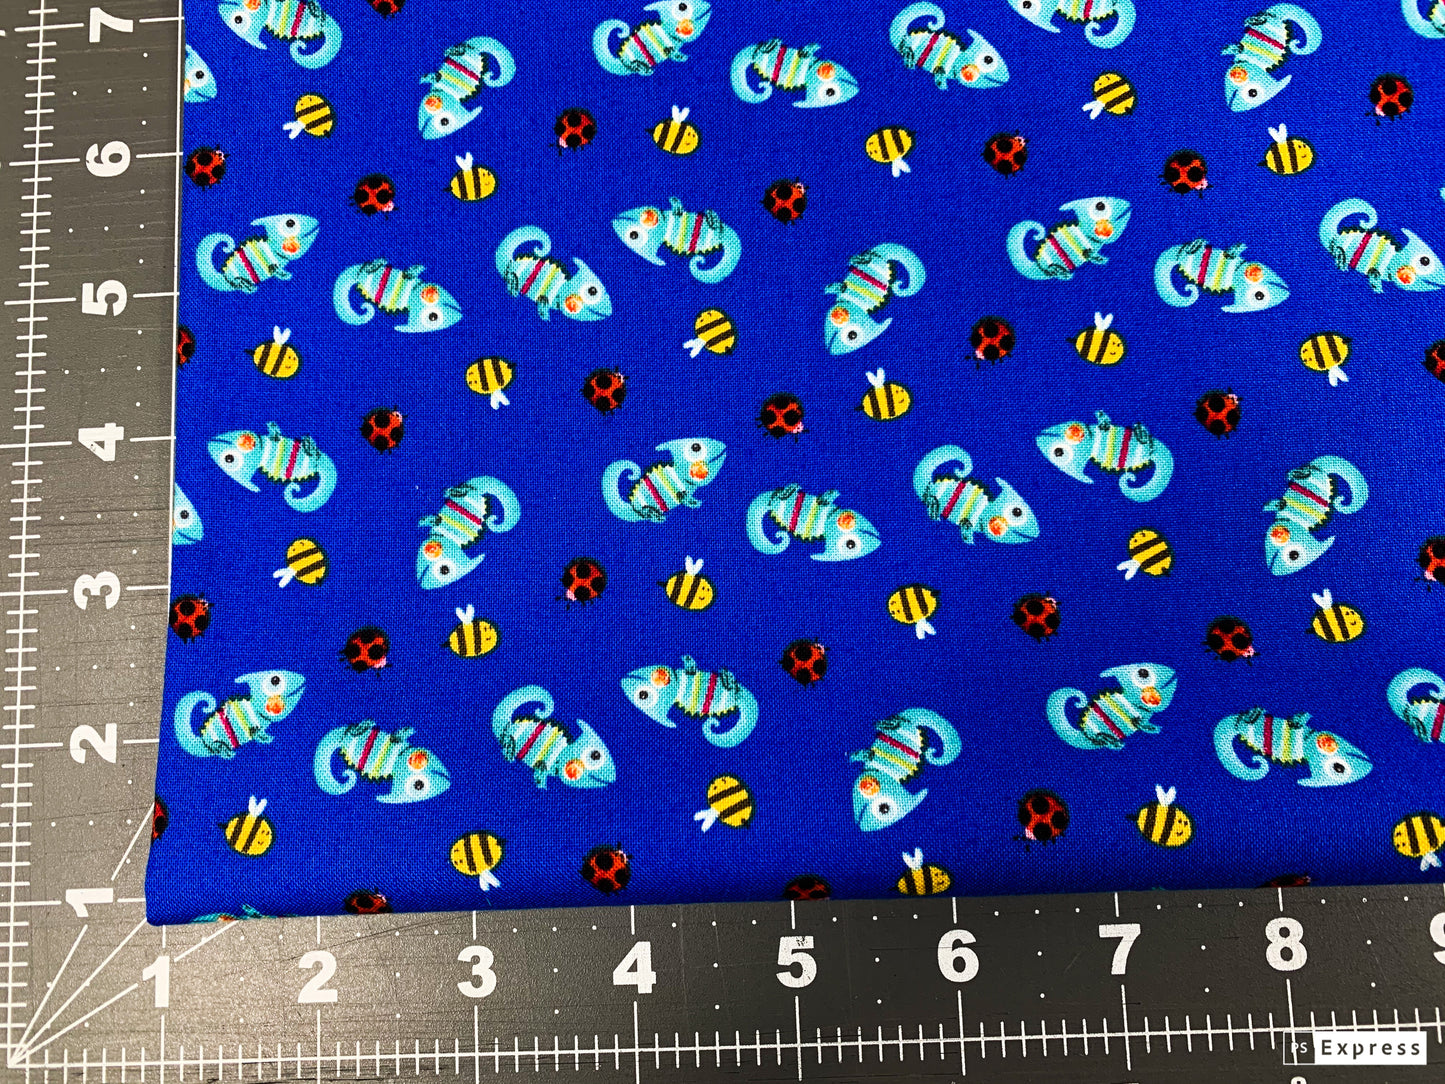 Royal Blue Chameleon fabric 9250 ladybugs bees